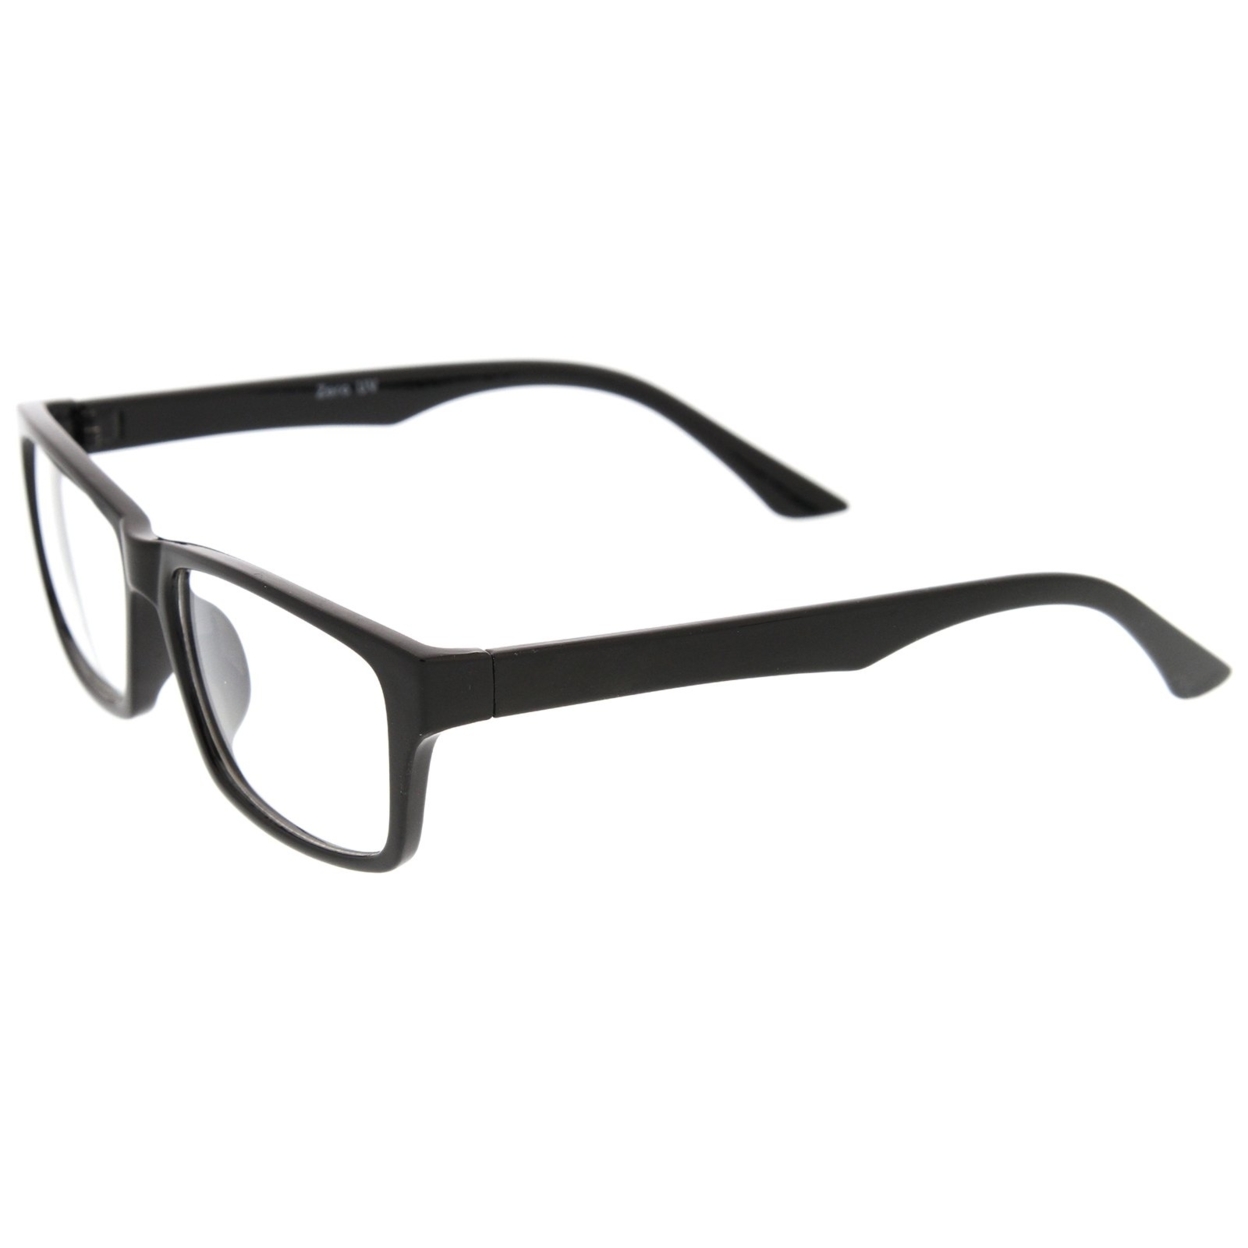 Modern Horn Rimmed Clear Lens Rectangle Eyeglasses 52mm - Shiny Tortoise / Clear